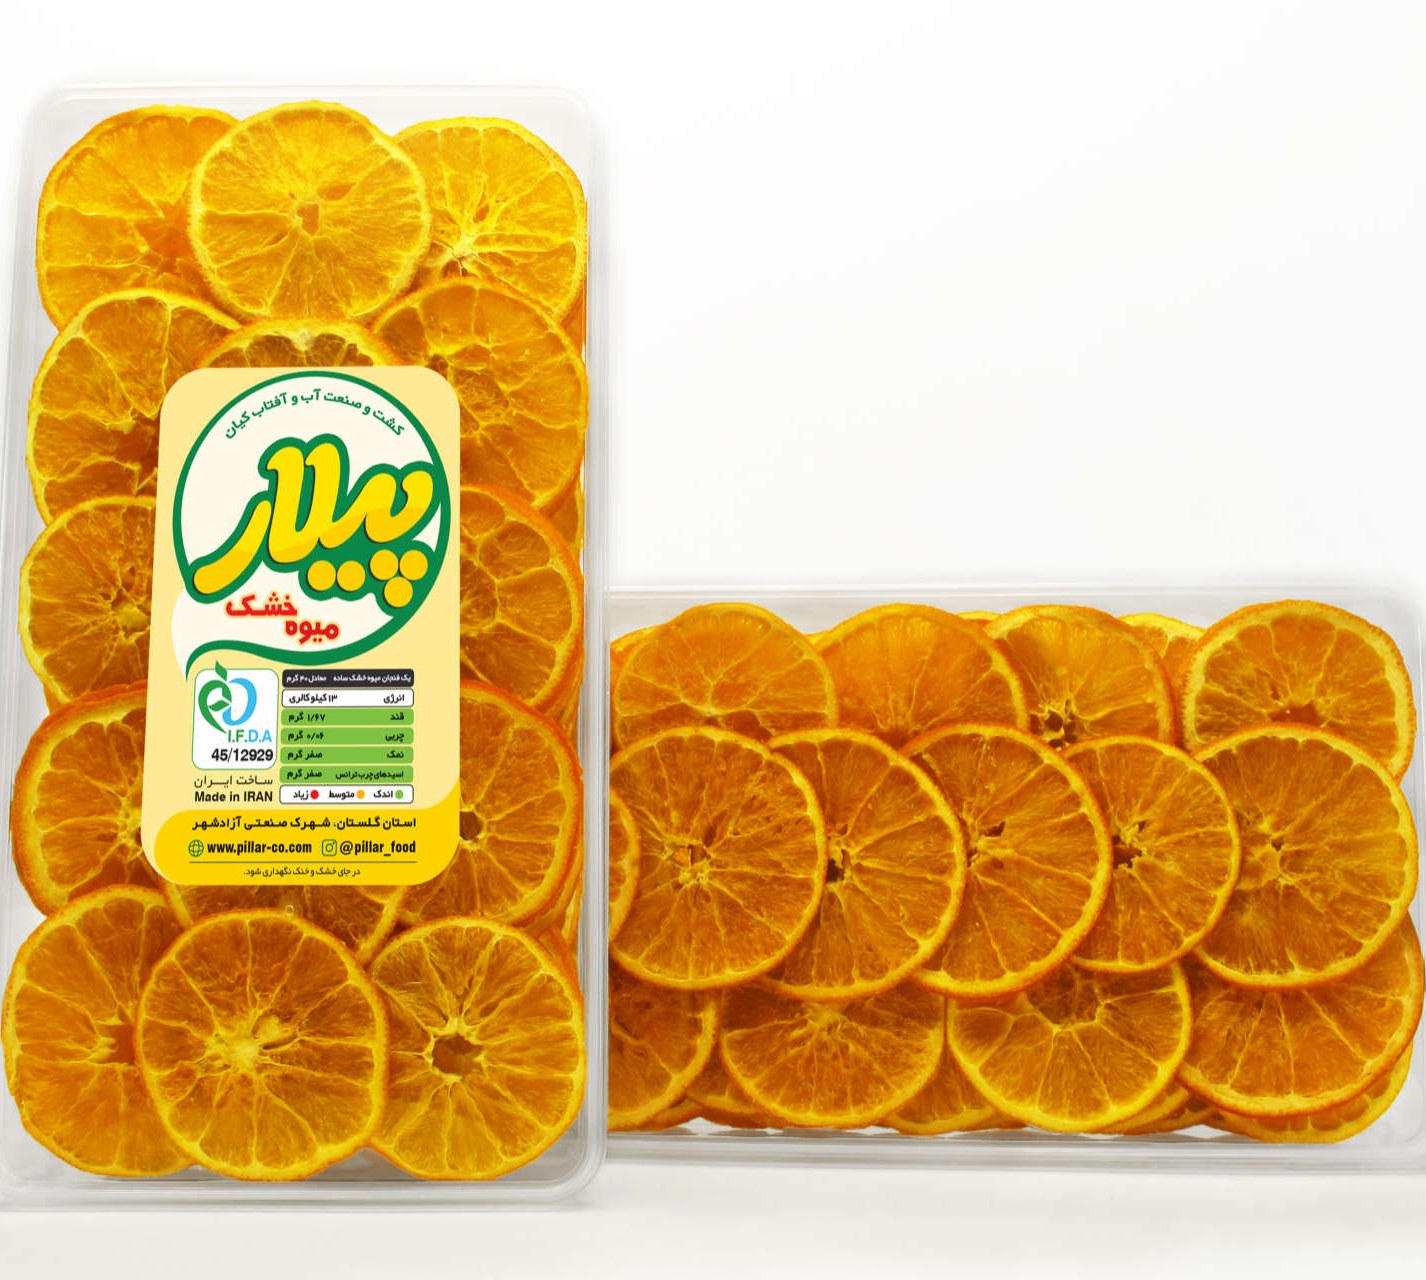 بهترین قیمت پرتقال تامسون جنوب میوه پلاس | خرید و لیست فروشندگان | بهمن1402 - قیمت